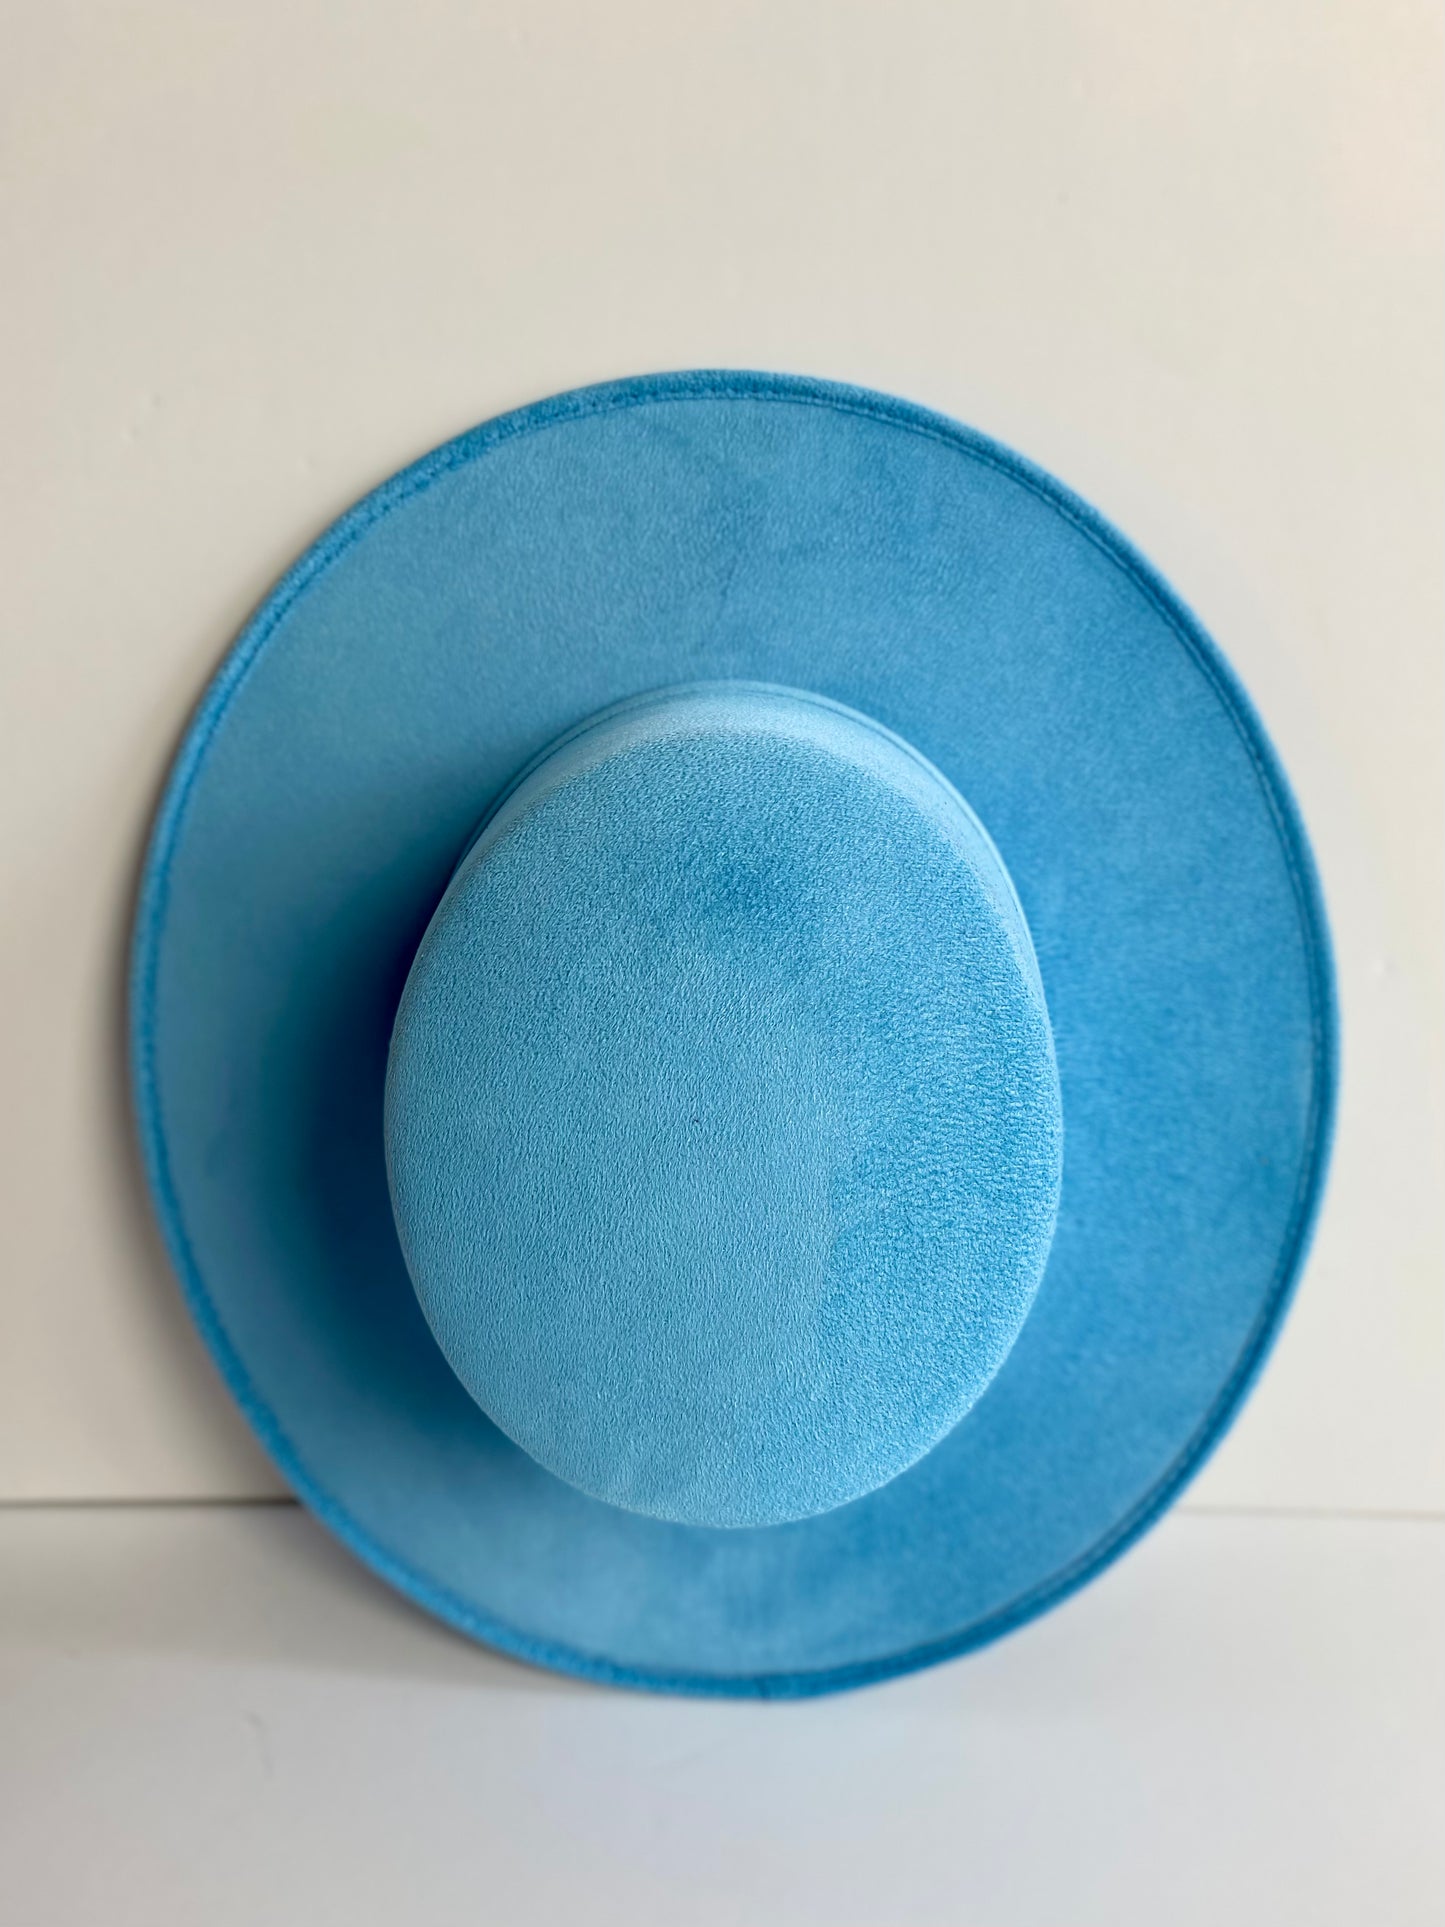 Vegan Suede Flat Top Hat- Aqua Blue